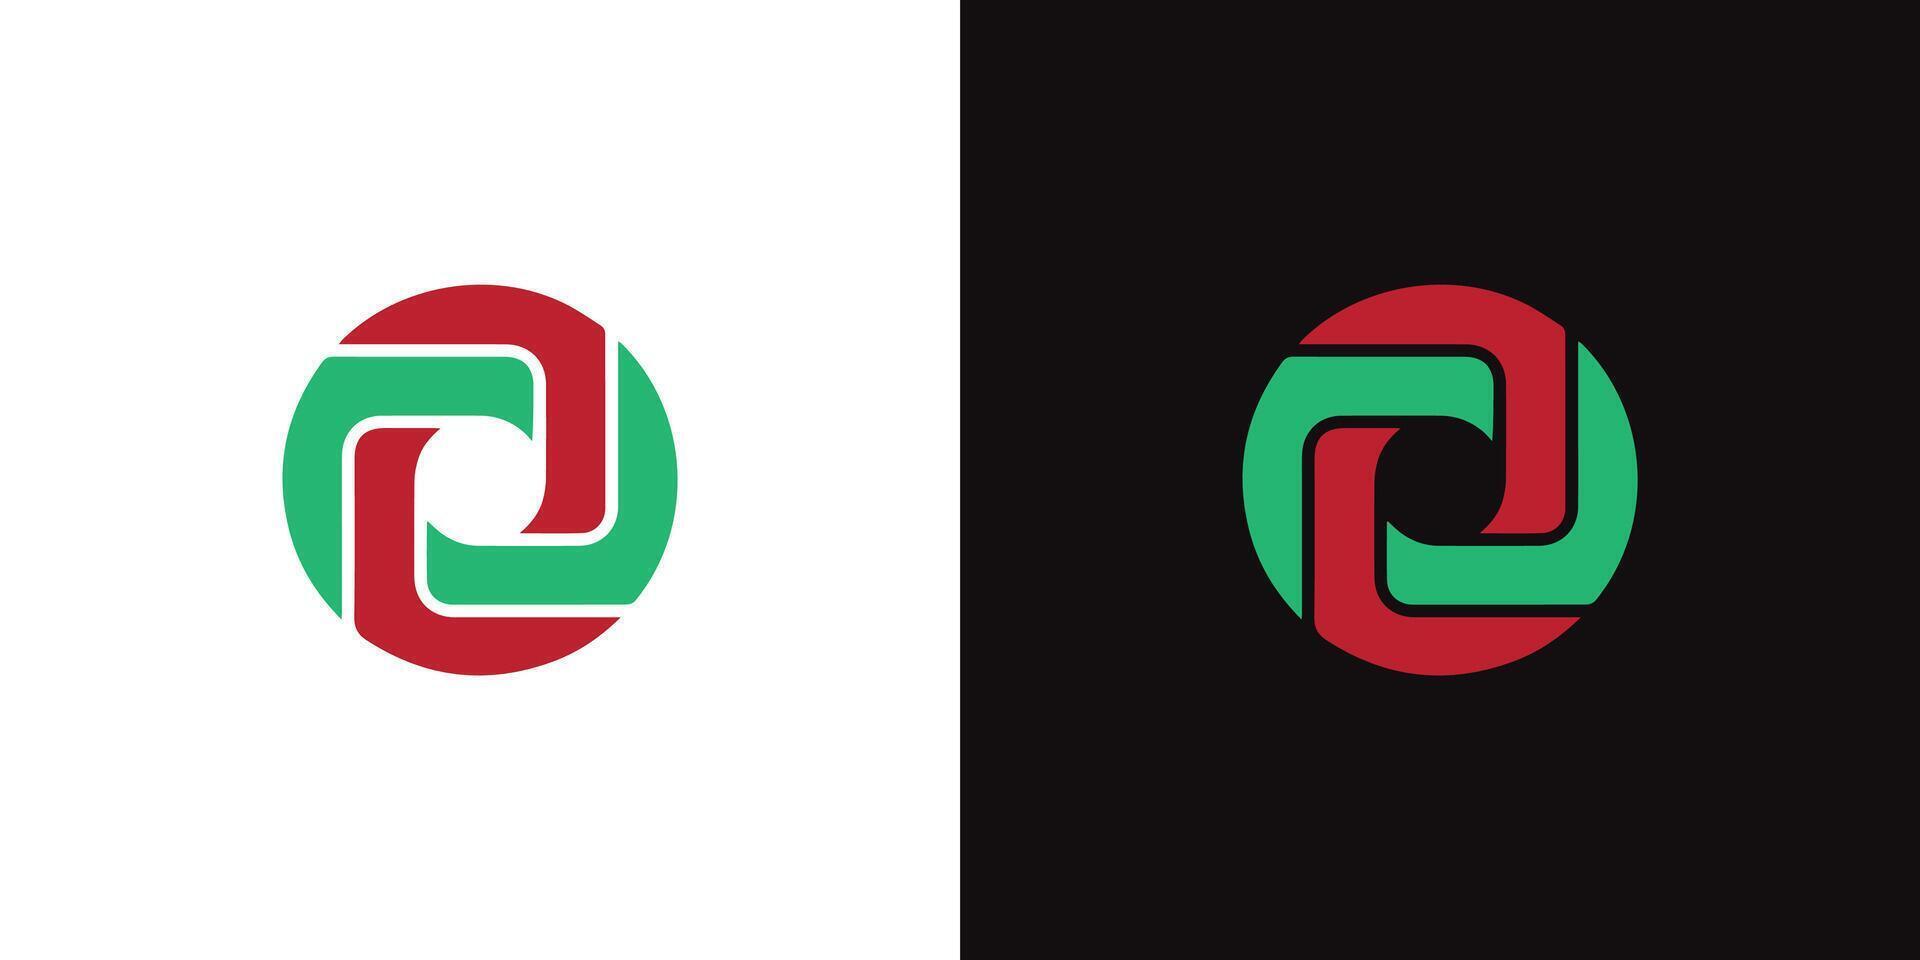 minimalista o monograma logo - vector diseño para moderno negocio